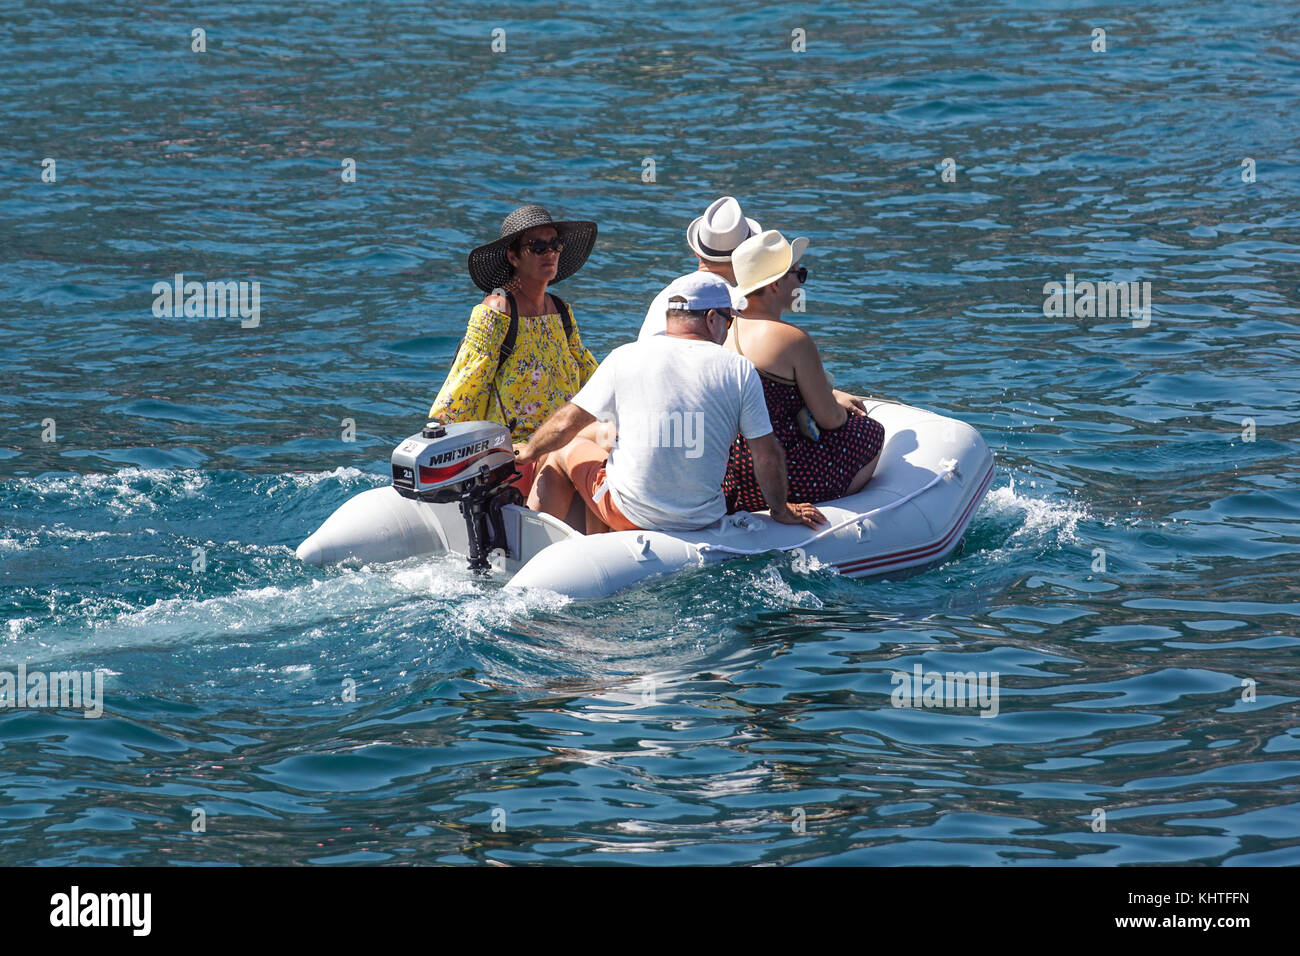 Niza , Francia - 7 de agosto de 2017 : pequeña embarcación inflable utilizado para transportar personas desde la playa a barcas desde el mar en barco oferta Foto de stock